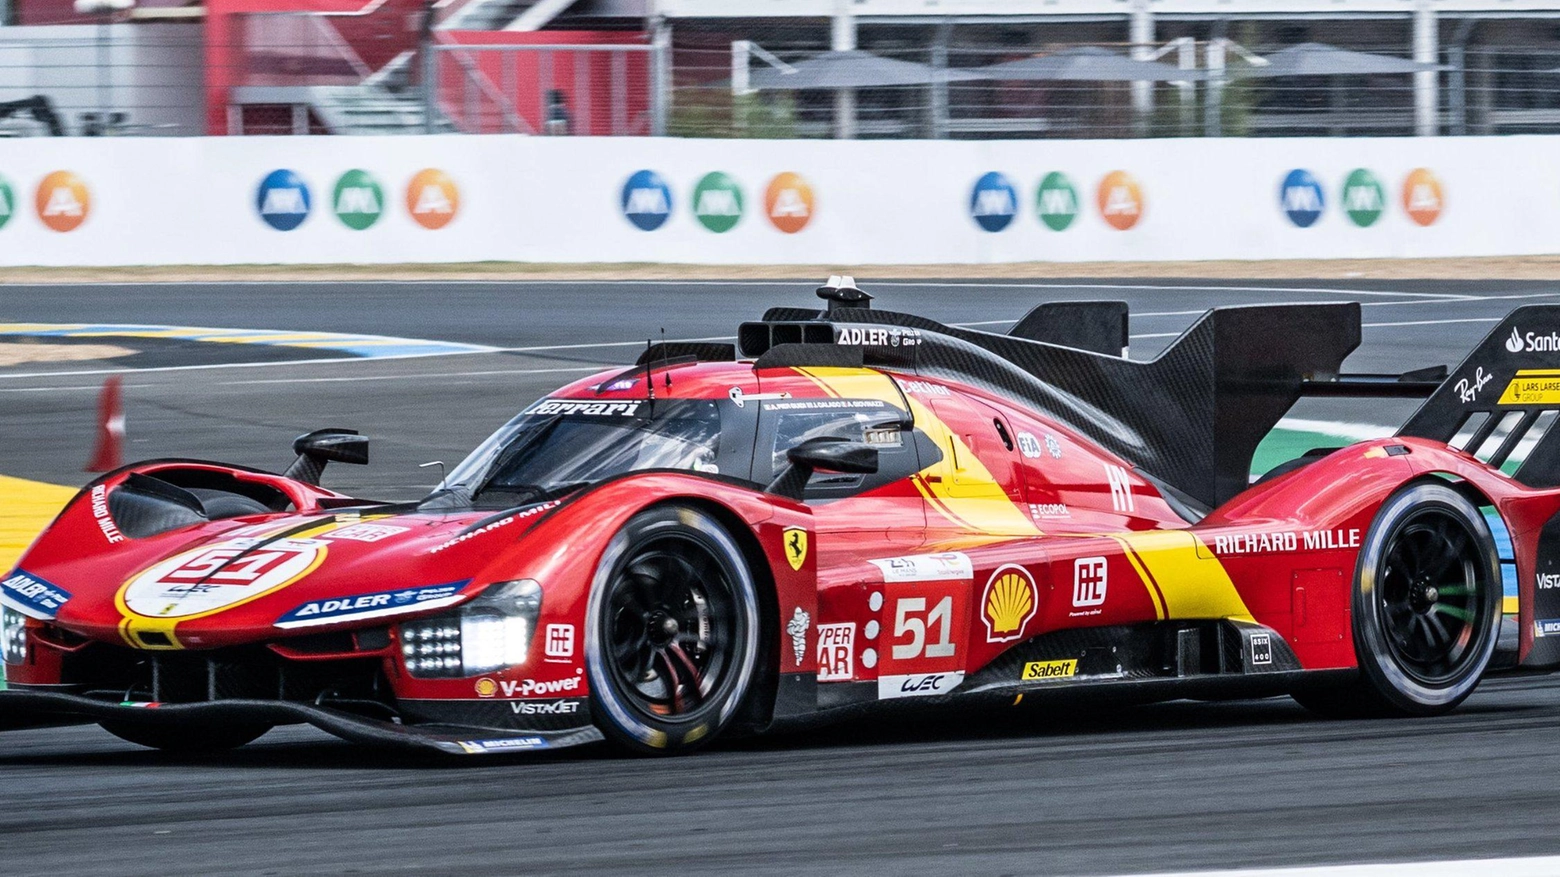 C’è una Ferrari che vola: prima fila a Le Mans Fuoco e Pier Guidi domani cercano l’impresa